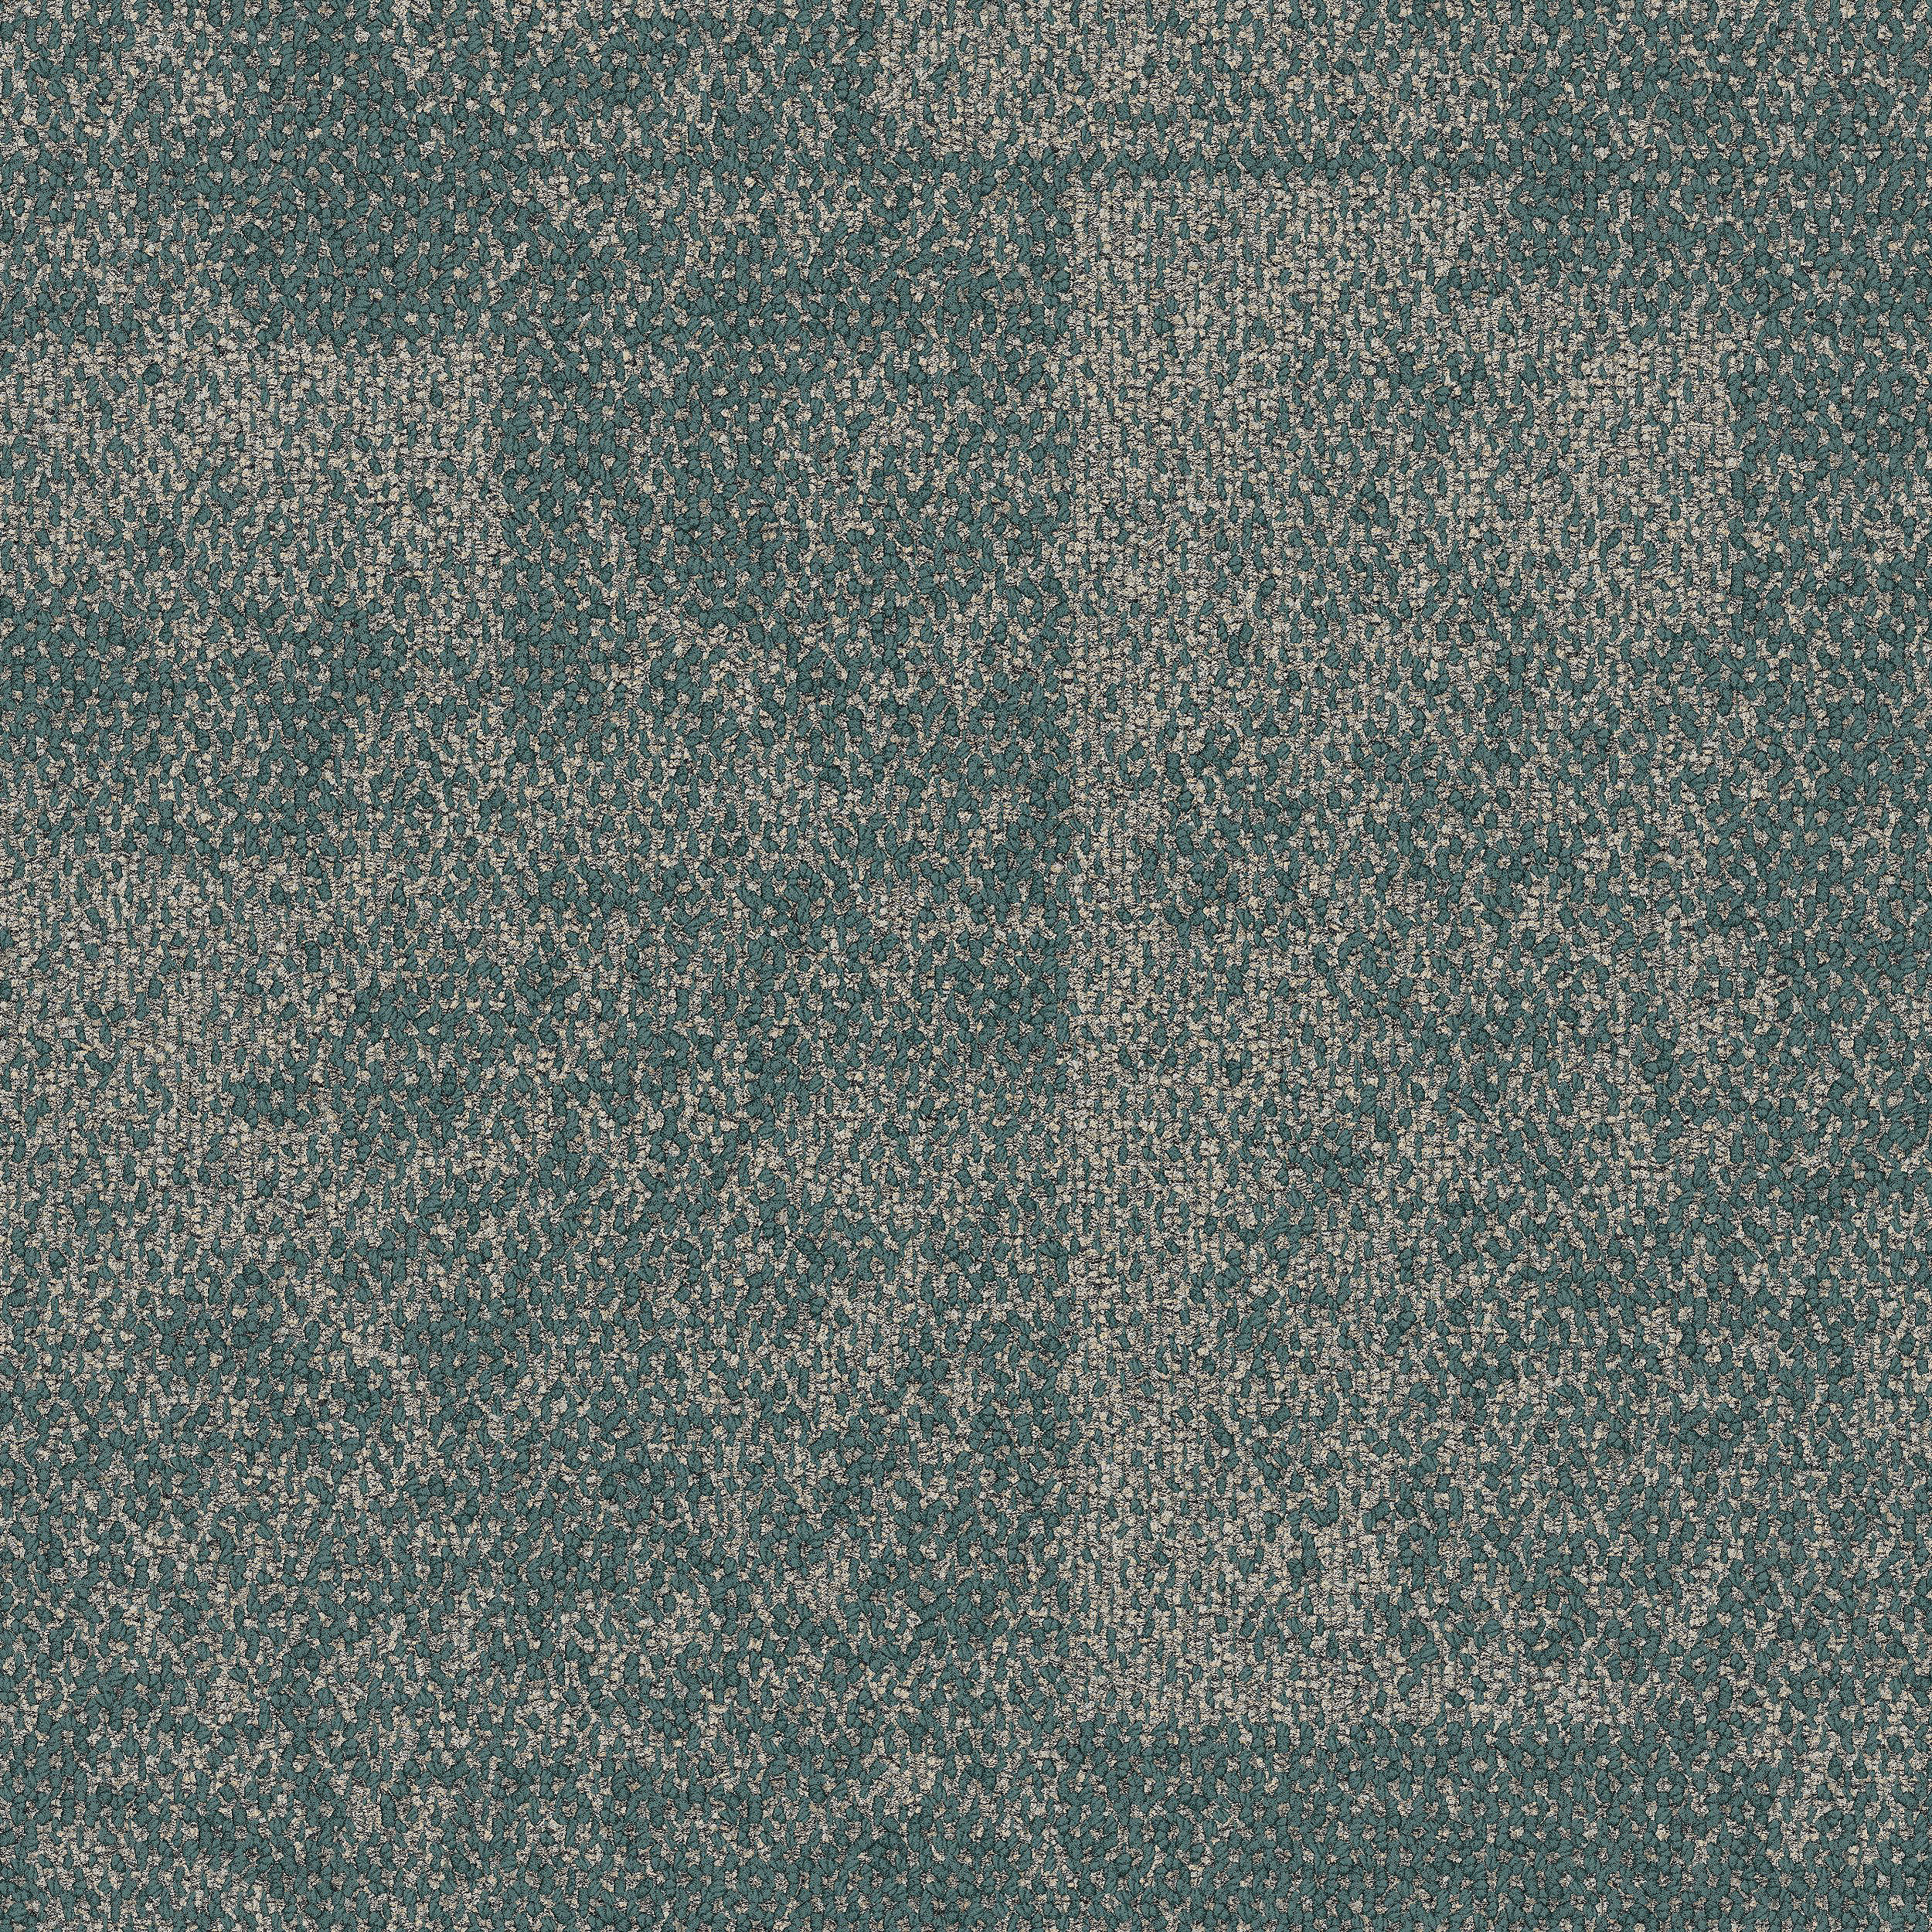 Open Air 404 Accent Carpet Tile In Teal Bildnummer 5